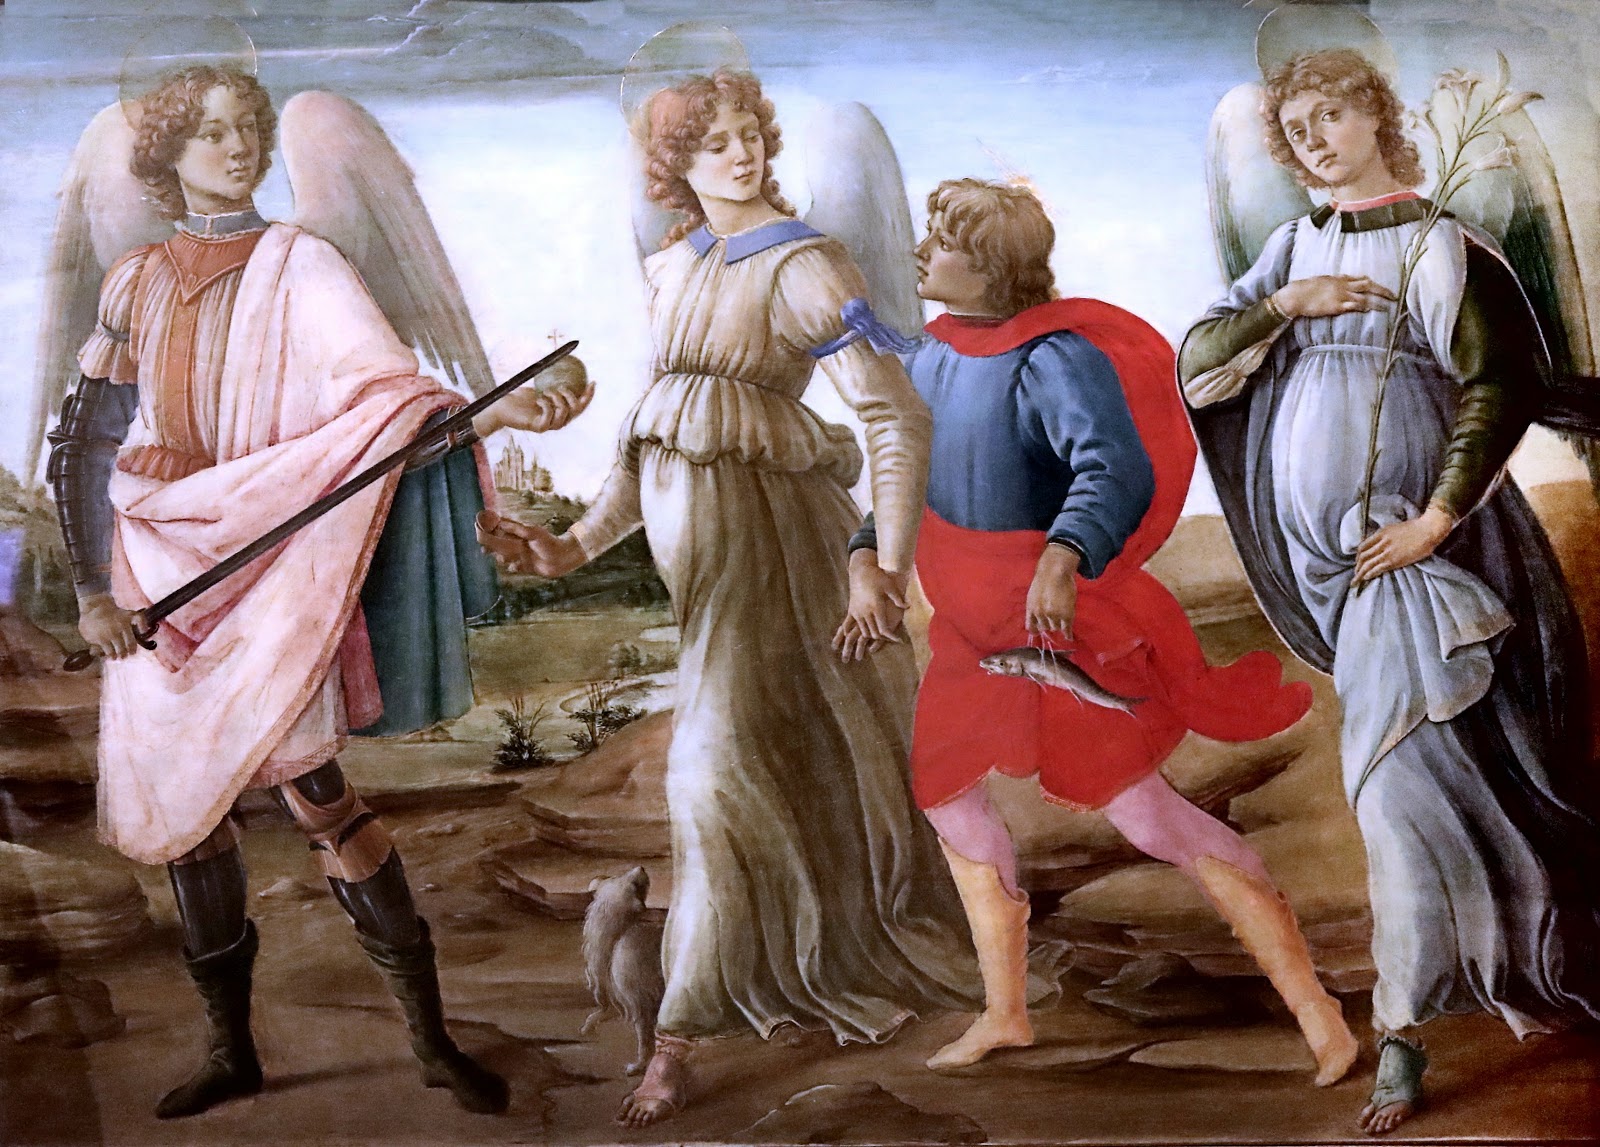 Filippino+Lippi-1457-1504 (46).jpg